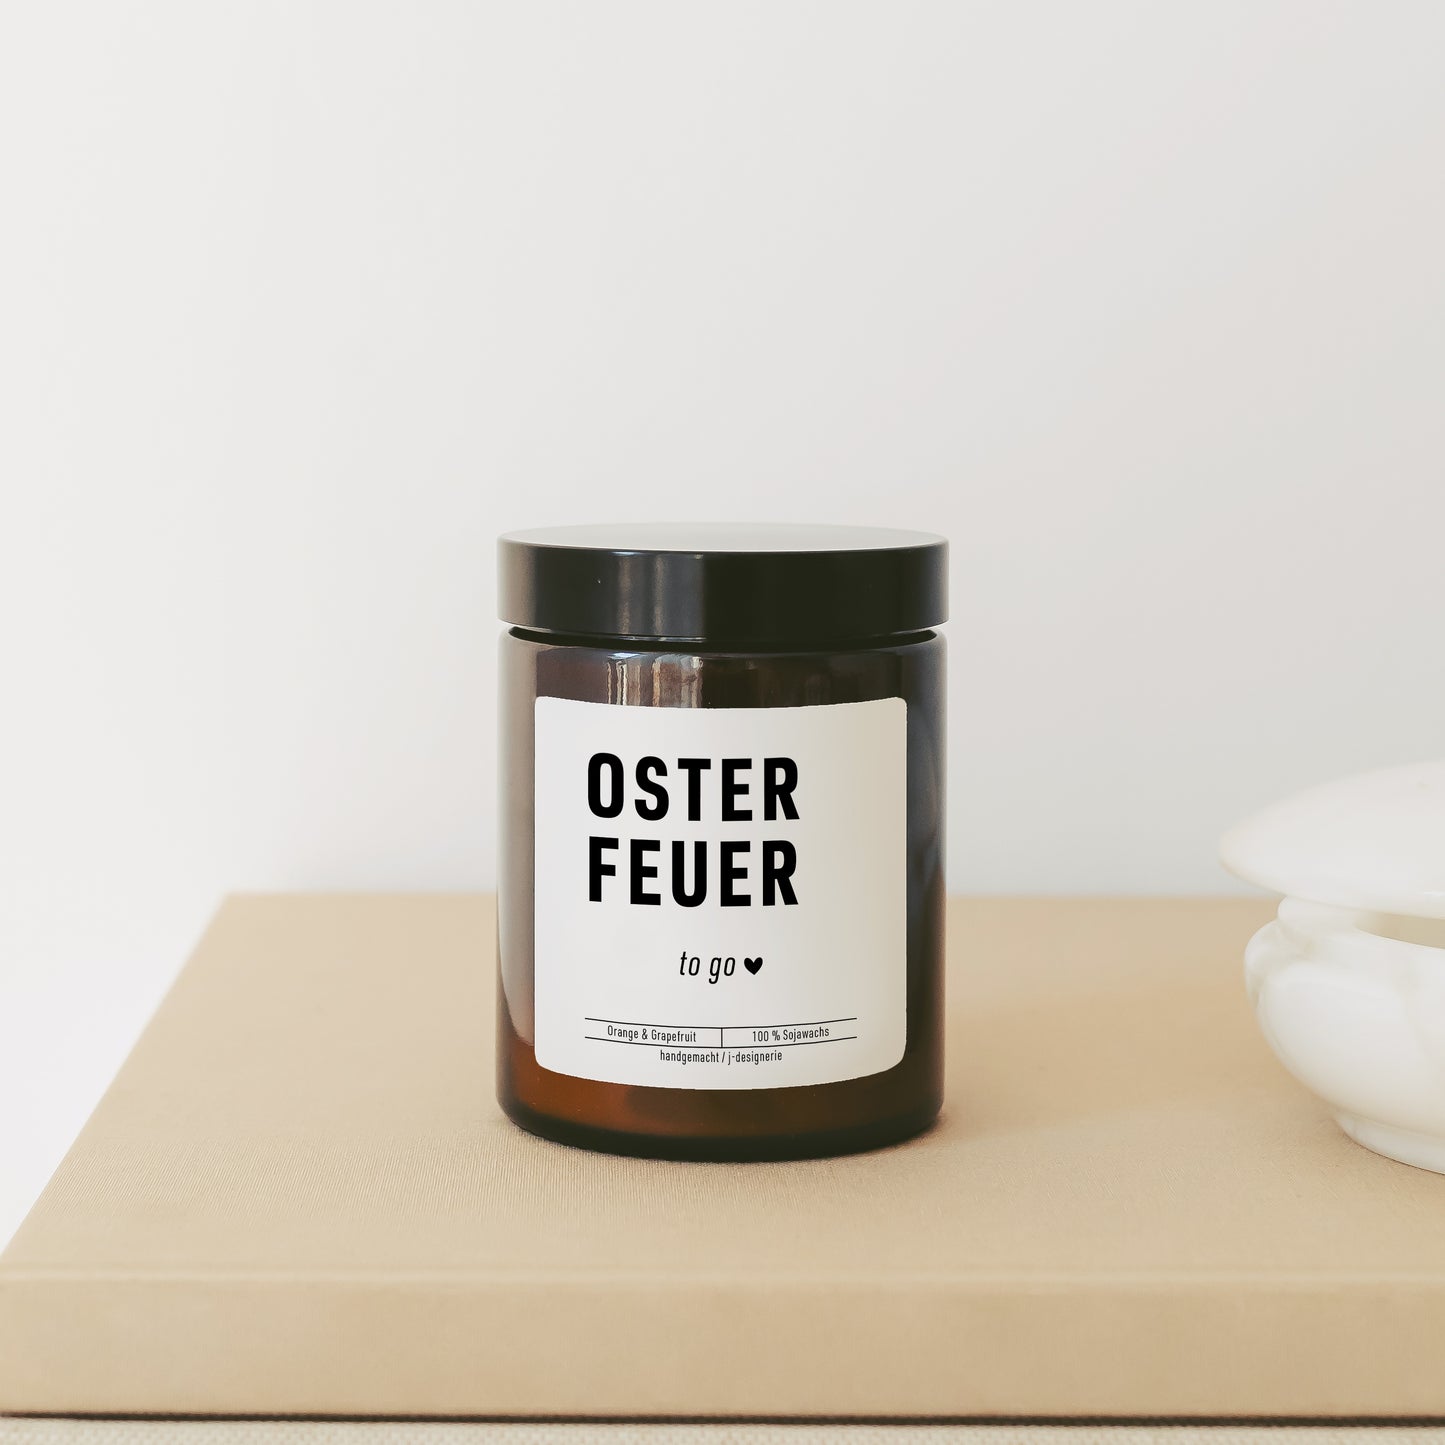 Geschenk Ostern personalisiert – Kerze Osterfeuer im Glas mit Spruch – Deko